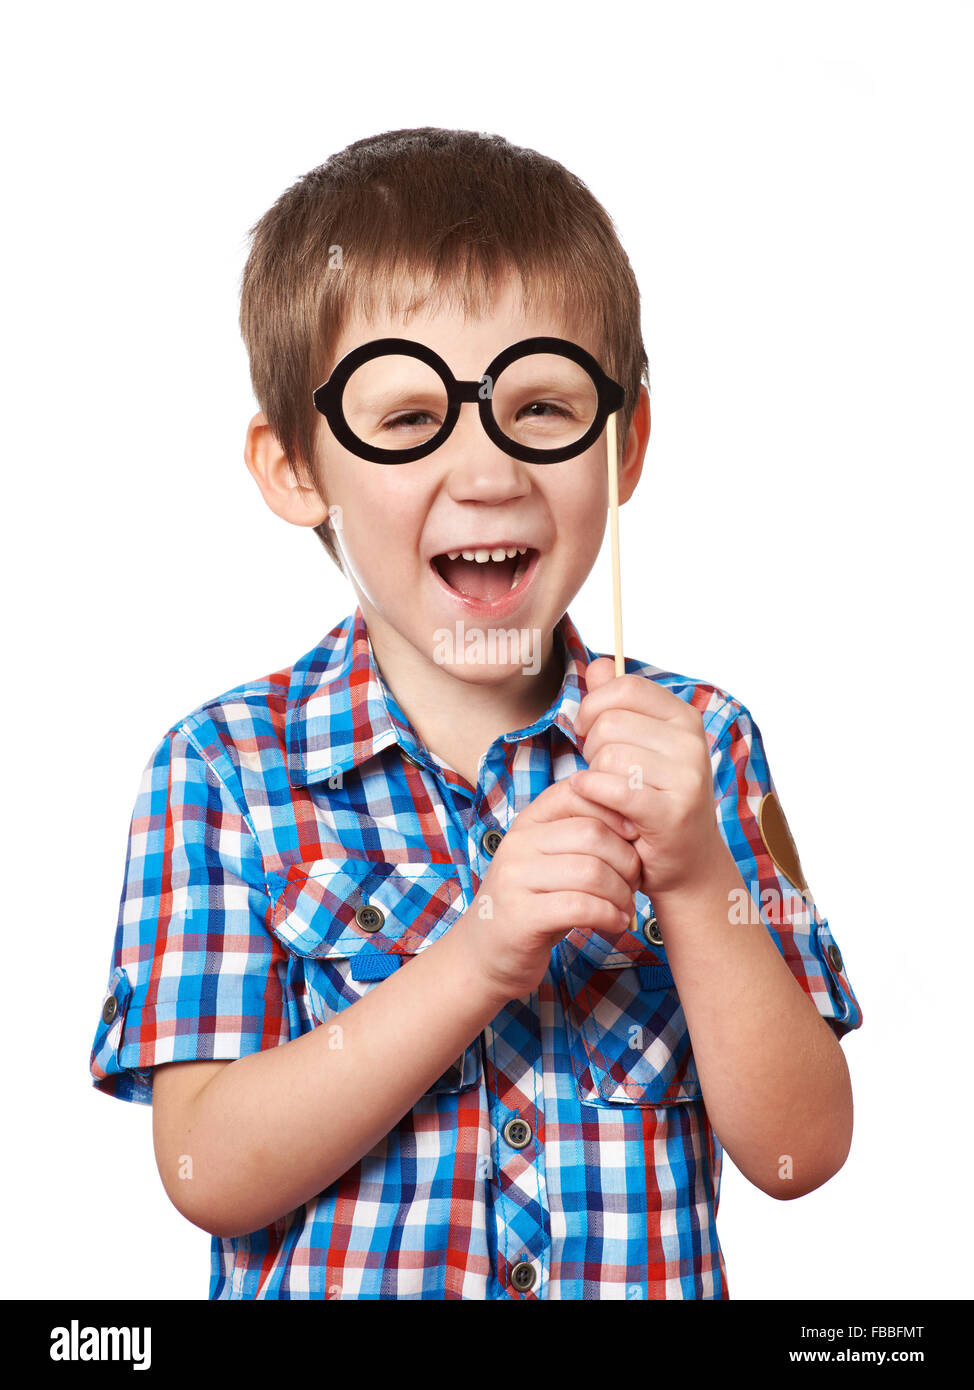 Kleine lustige junge mit Brille Maske auf Stick isoliert auf weiss Stockfoto